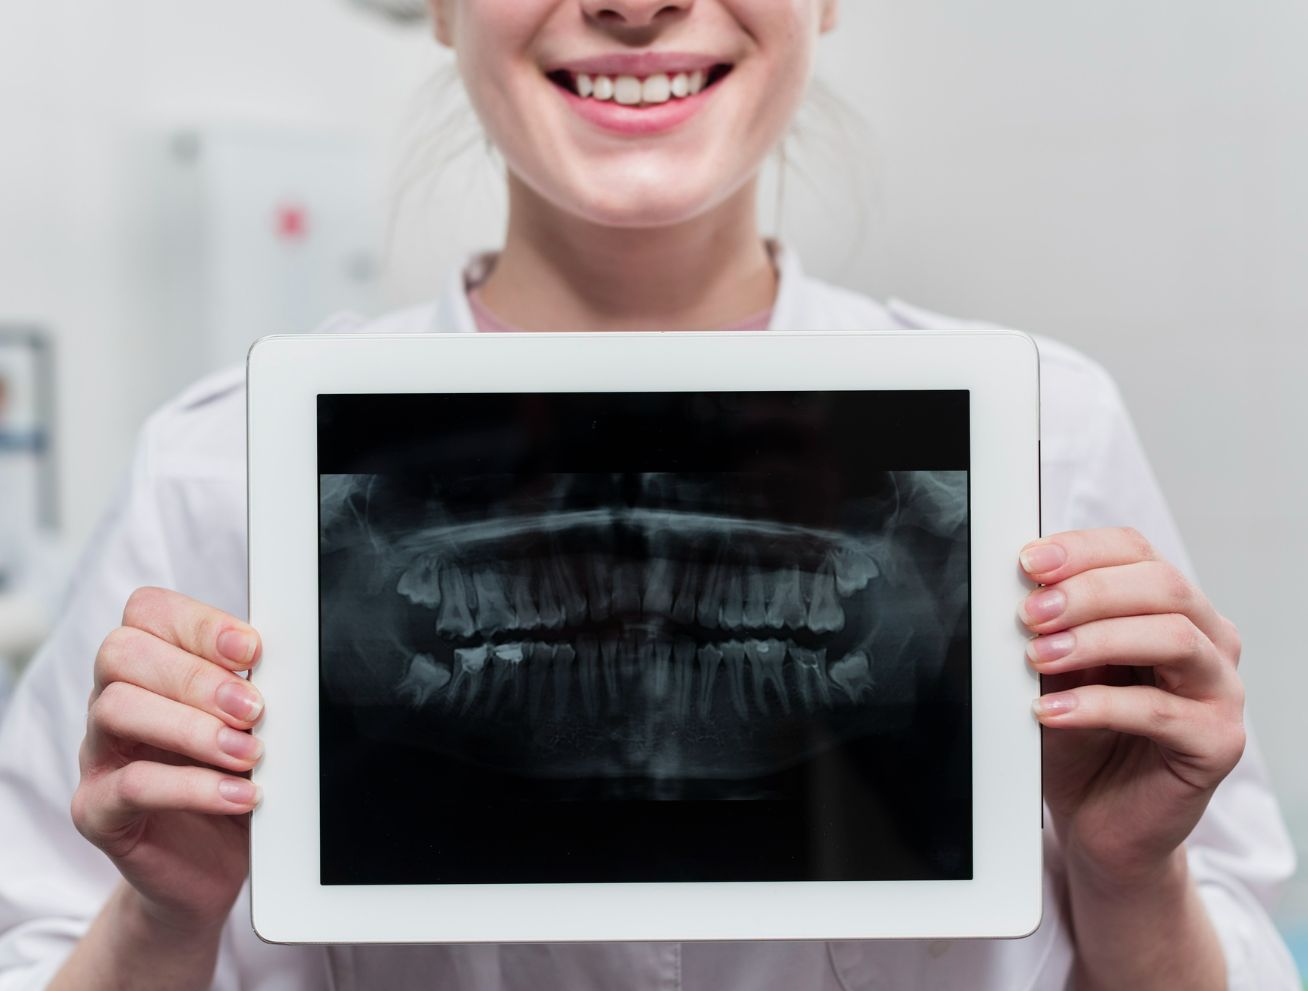 Entenda quais são os 5 principais exames odontológicos digitais